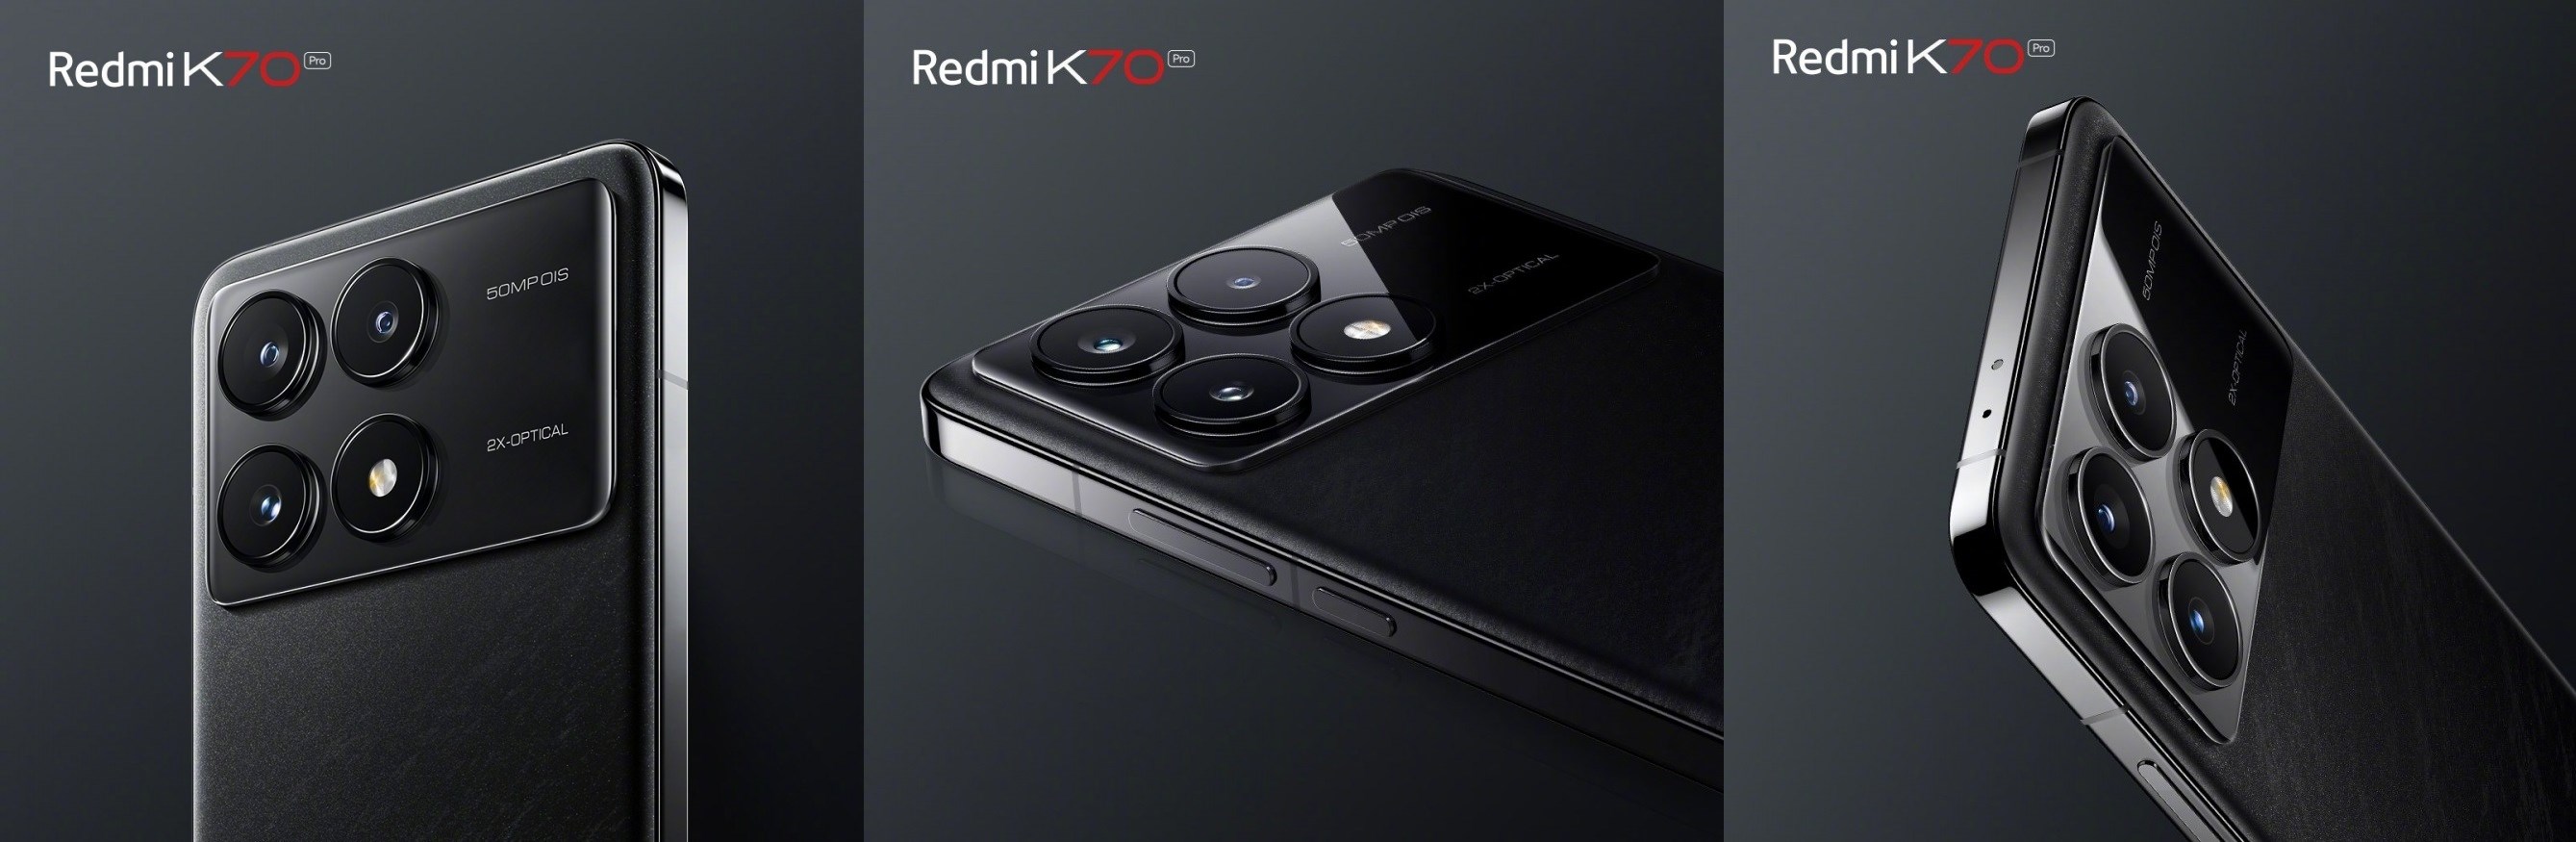 Xiaomi Redmi K70 Pro ilk kez görüntülendi: İşte tasarımı